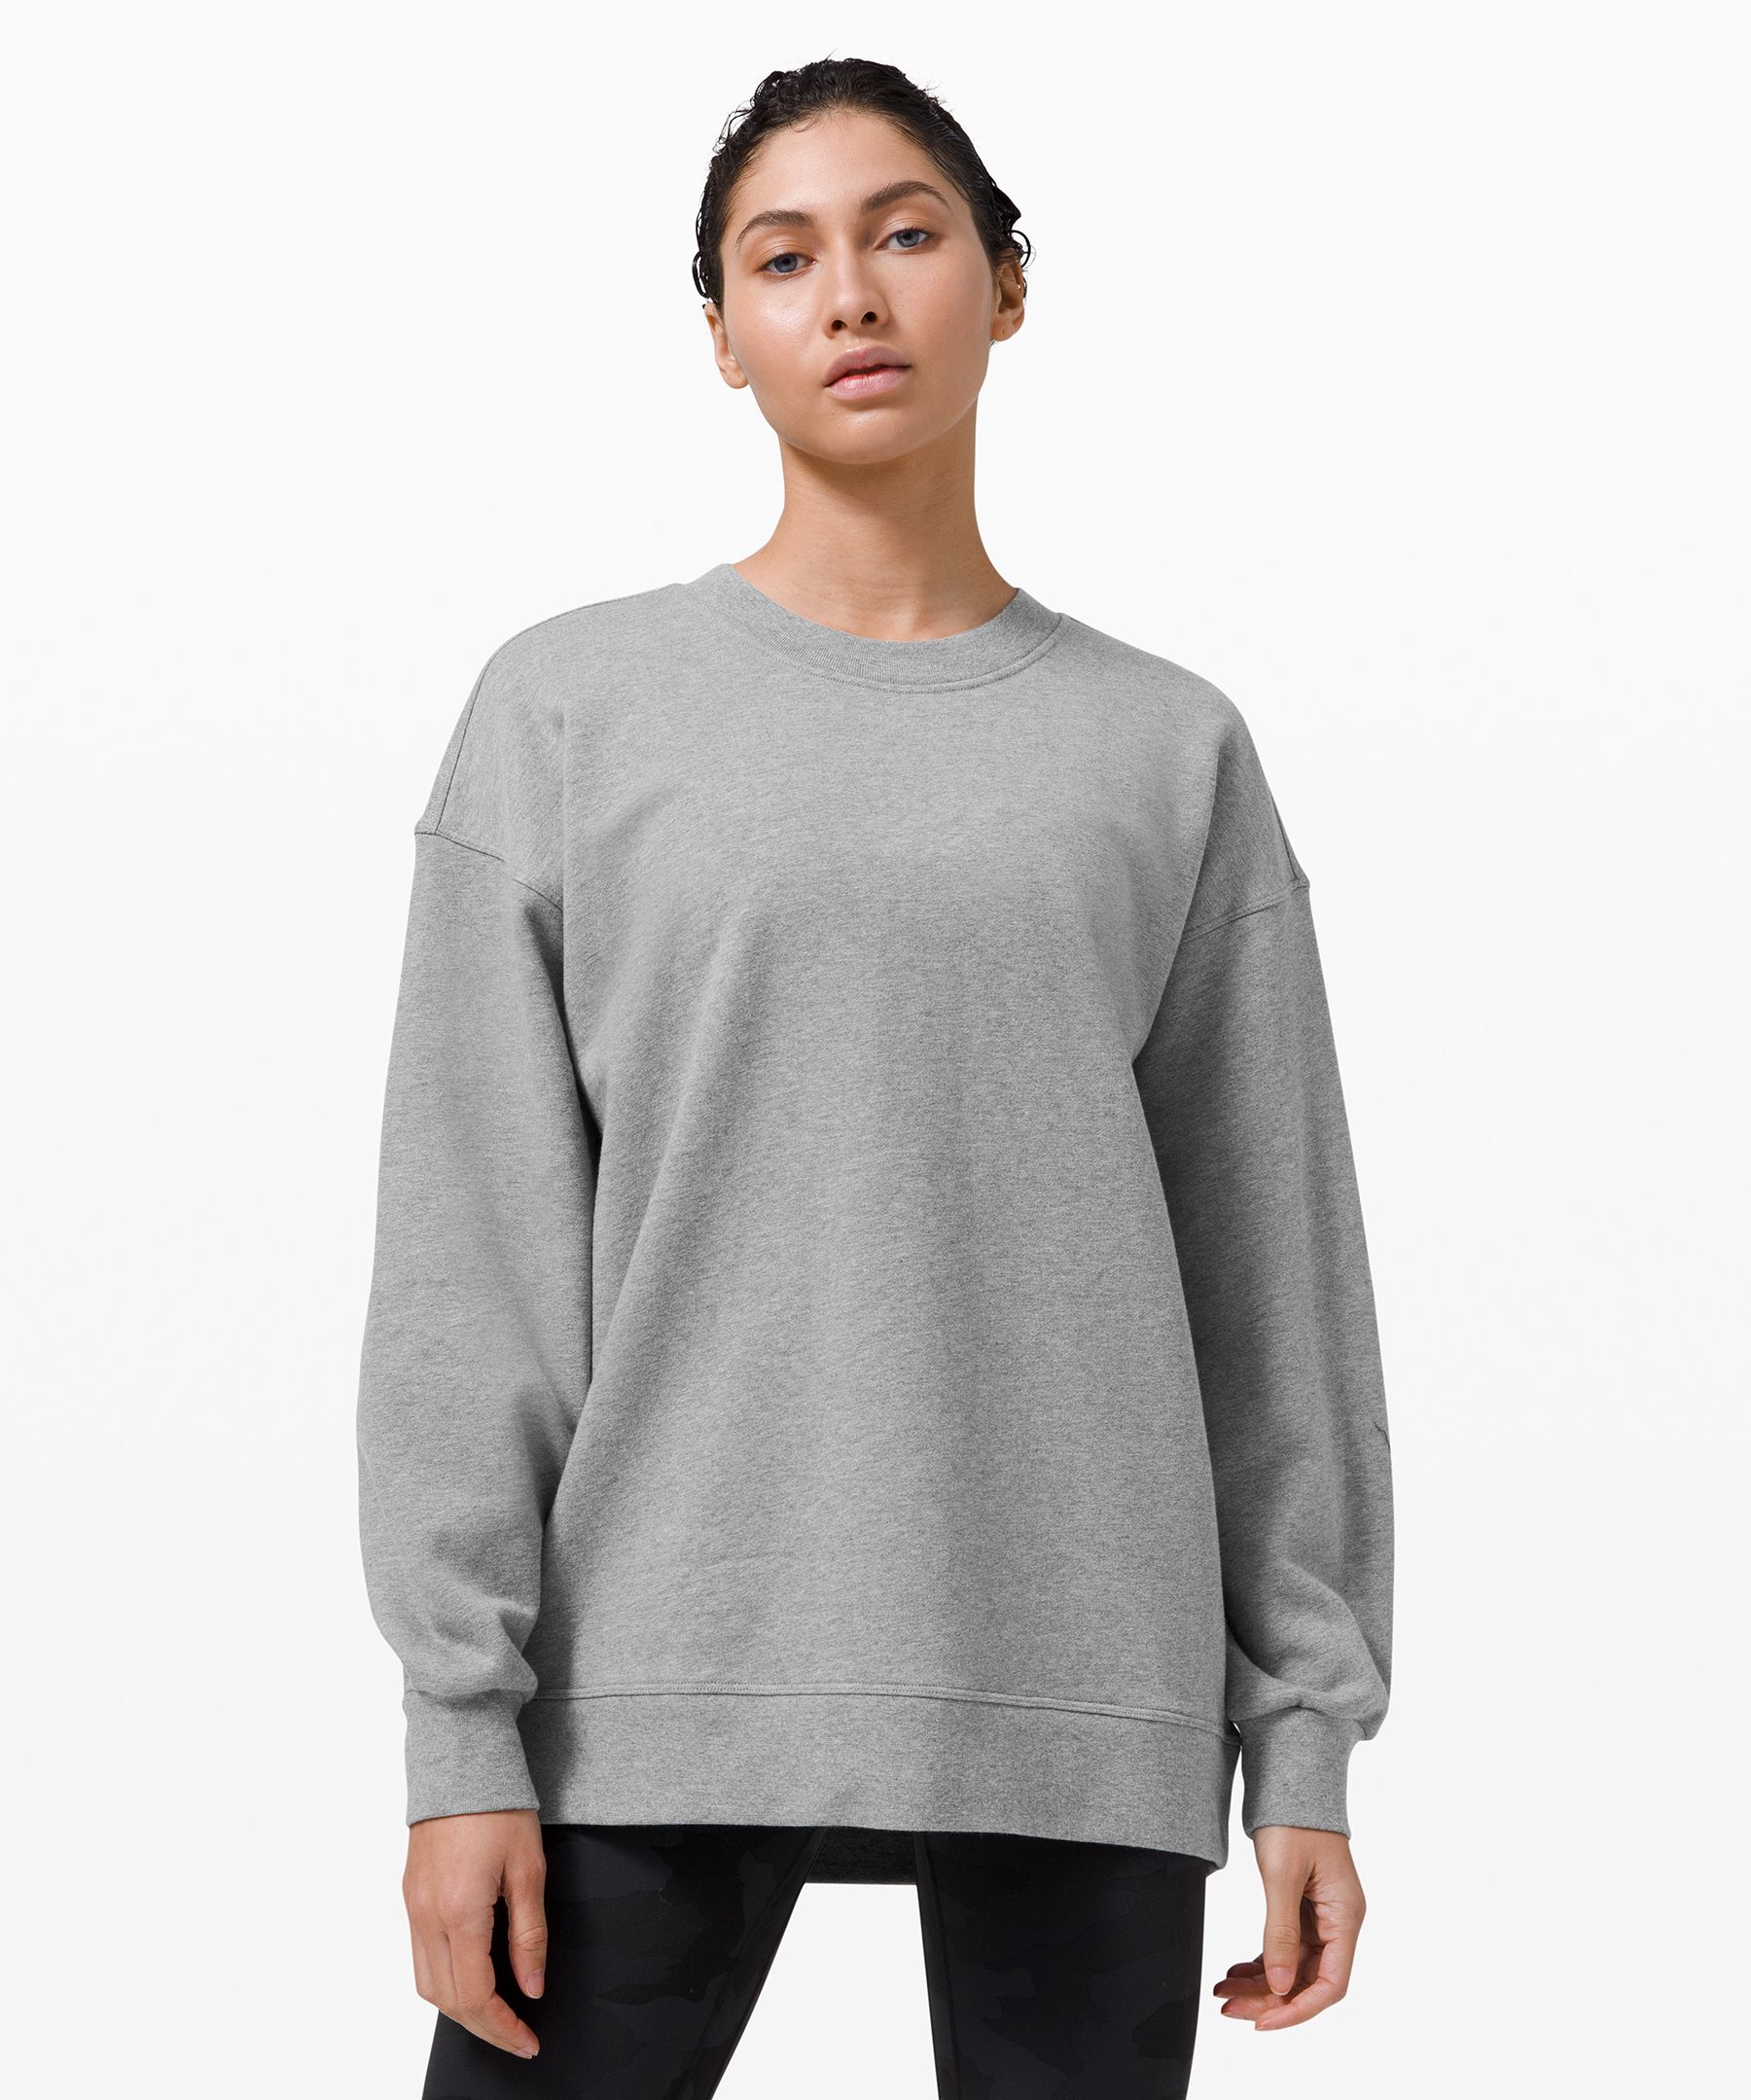 lululemon sweatshirt